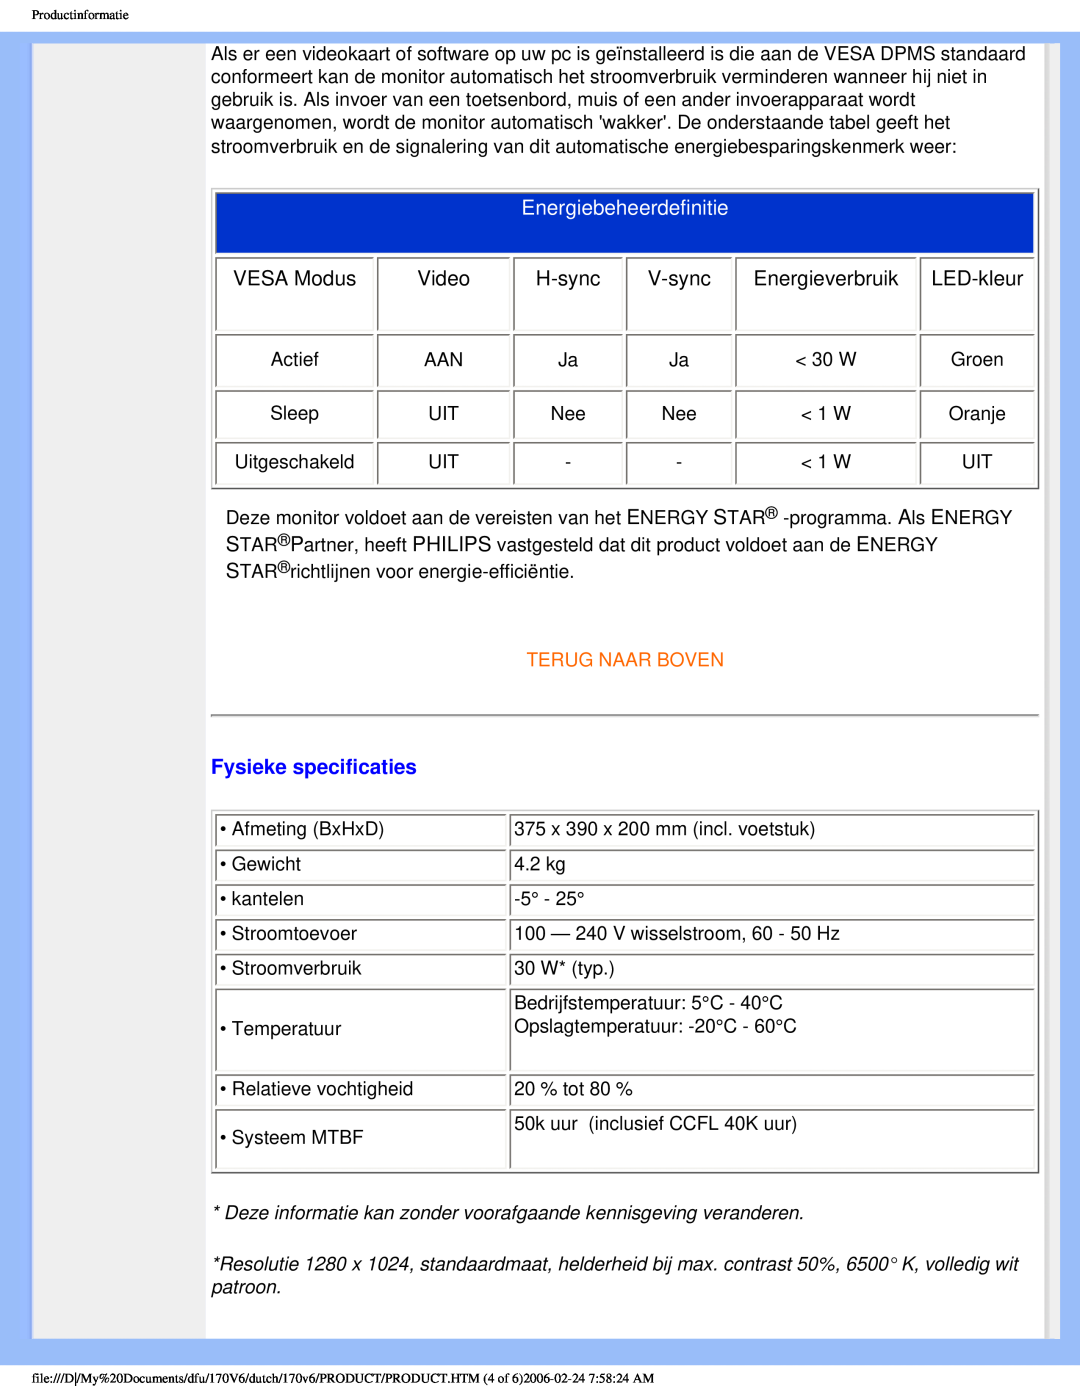 Philips 170V6 user manual Energiebeheerdefinitie, Fysieke specificaties, Terug Naar Boven 